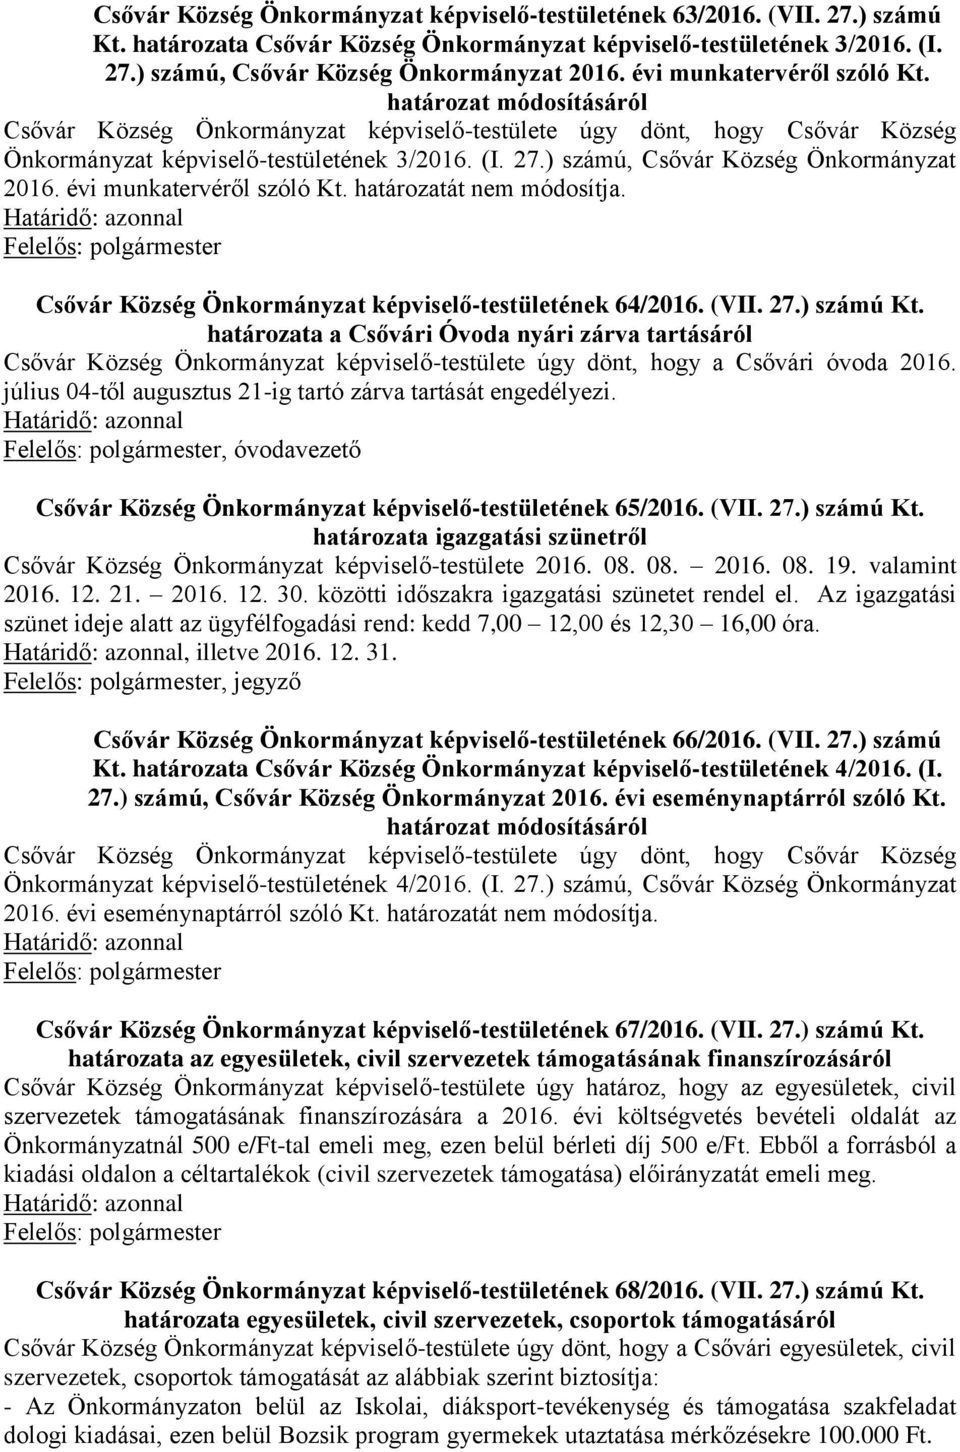 Csővár Község Önkormányzat képviselő-testületének évi határozatai - PDF  Free Download